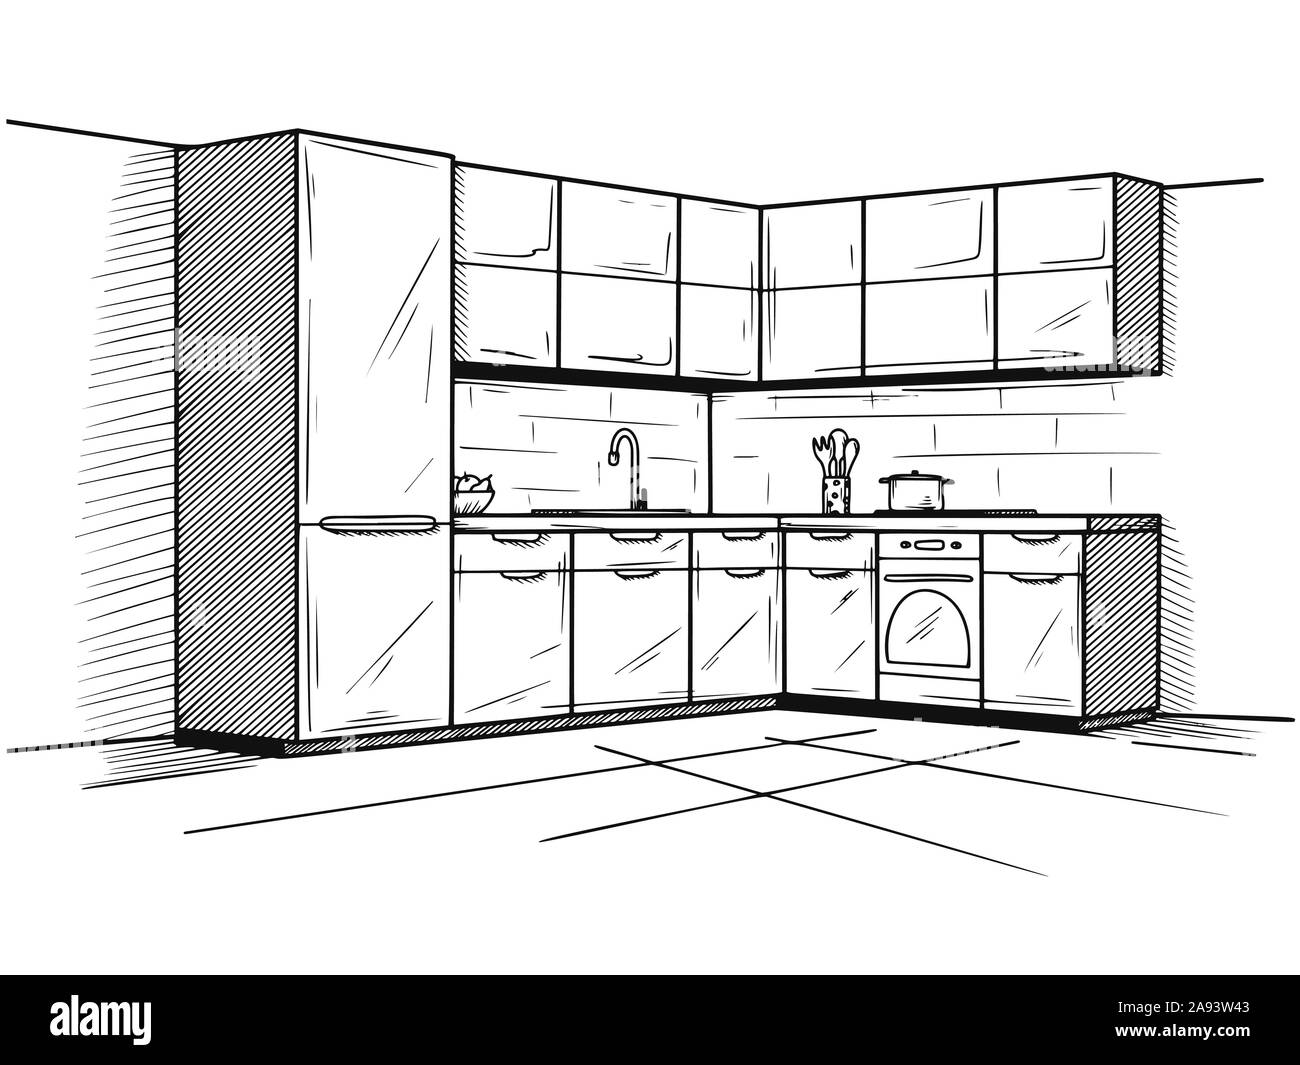 Пол на кухне с рисунком